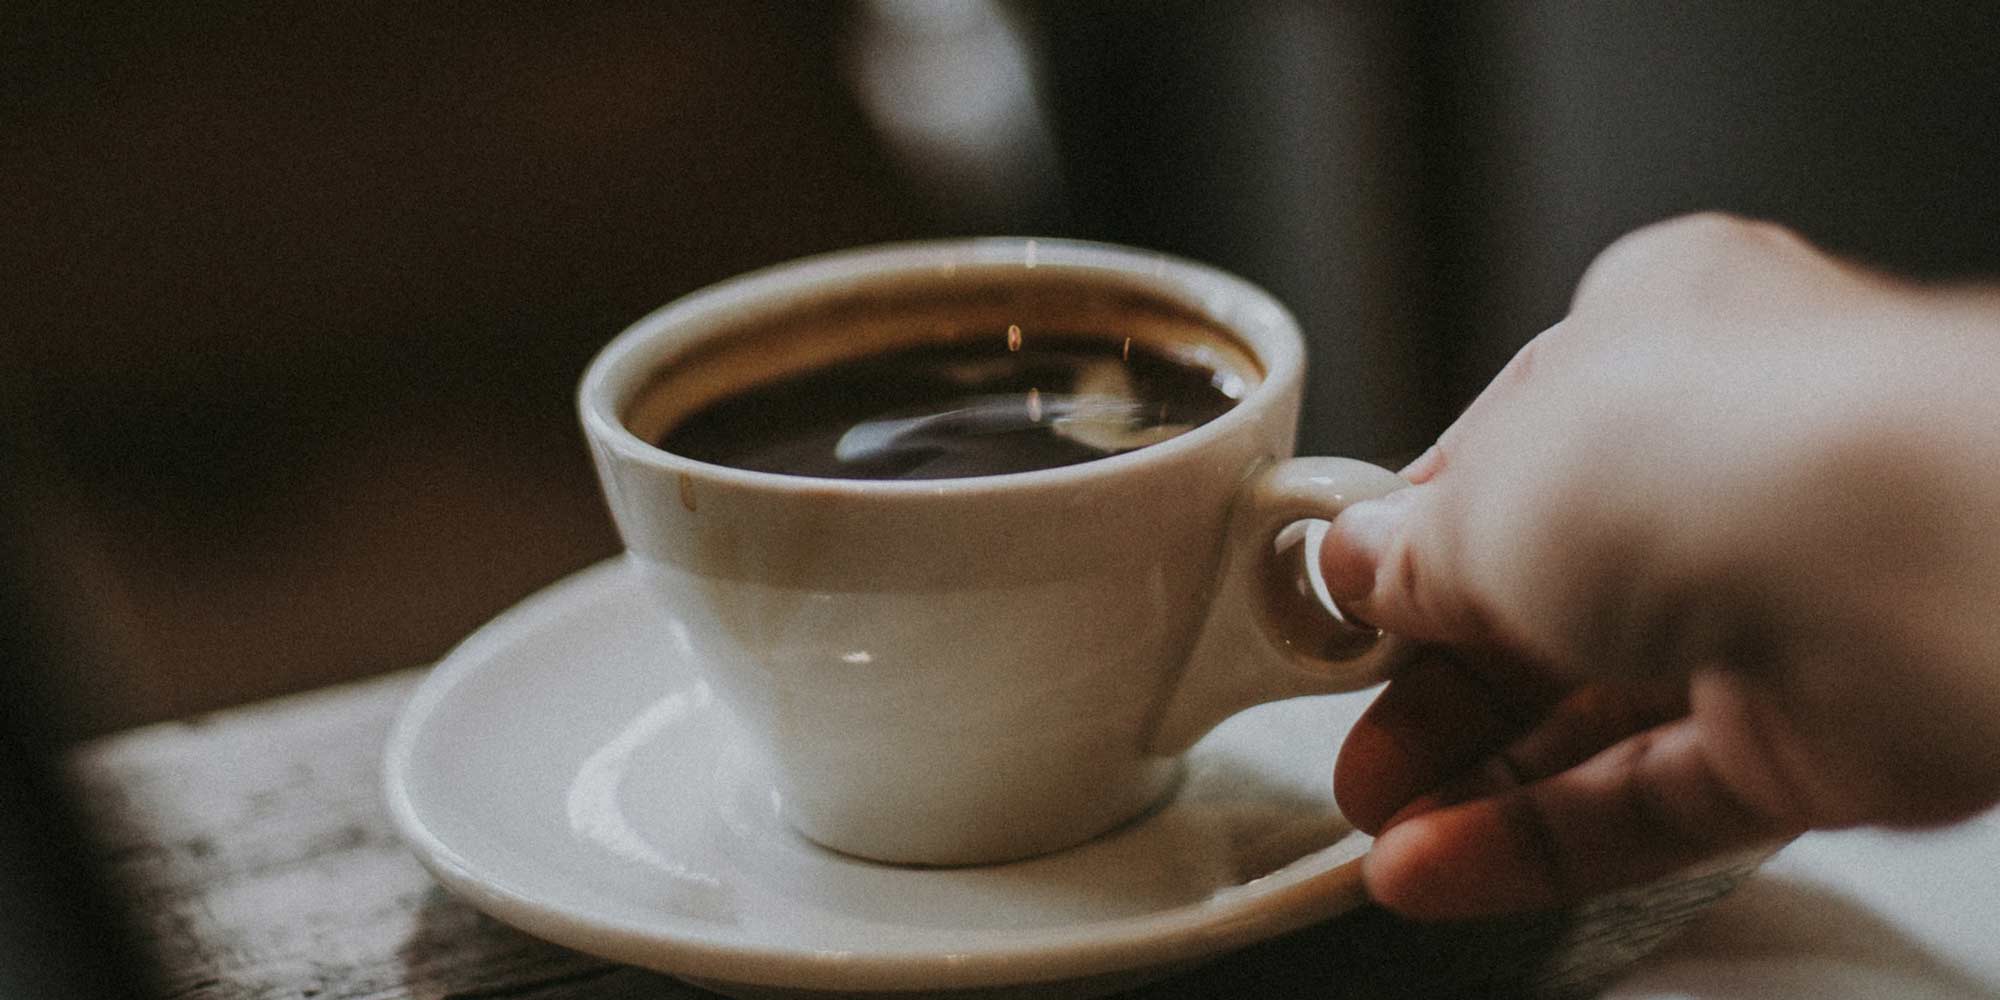 A hand holding a coffee mug